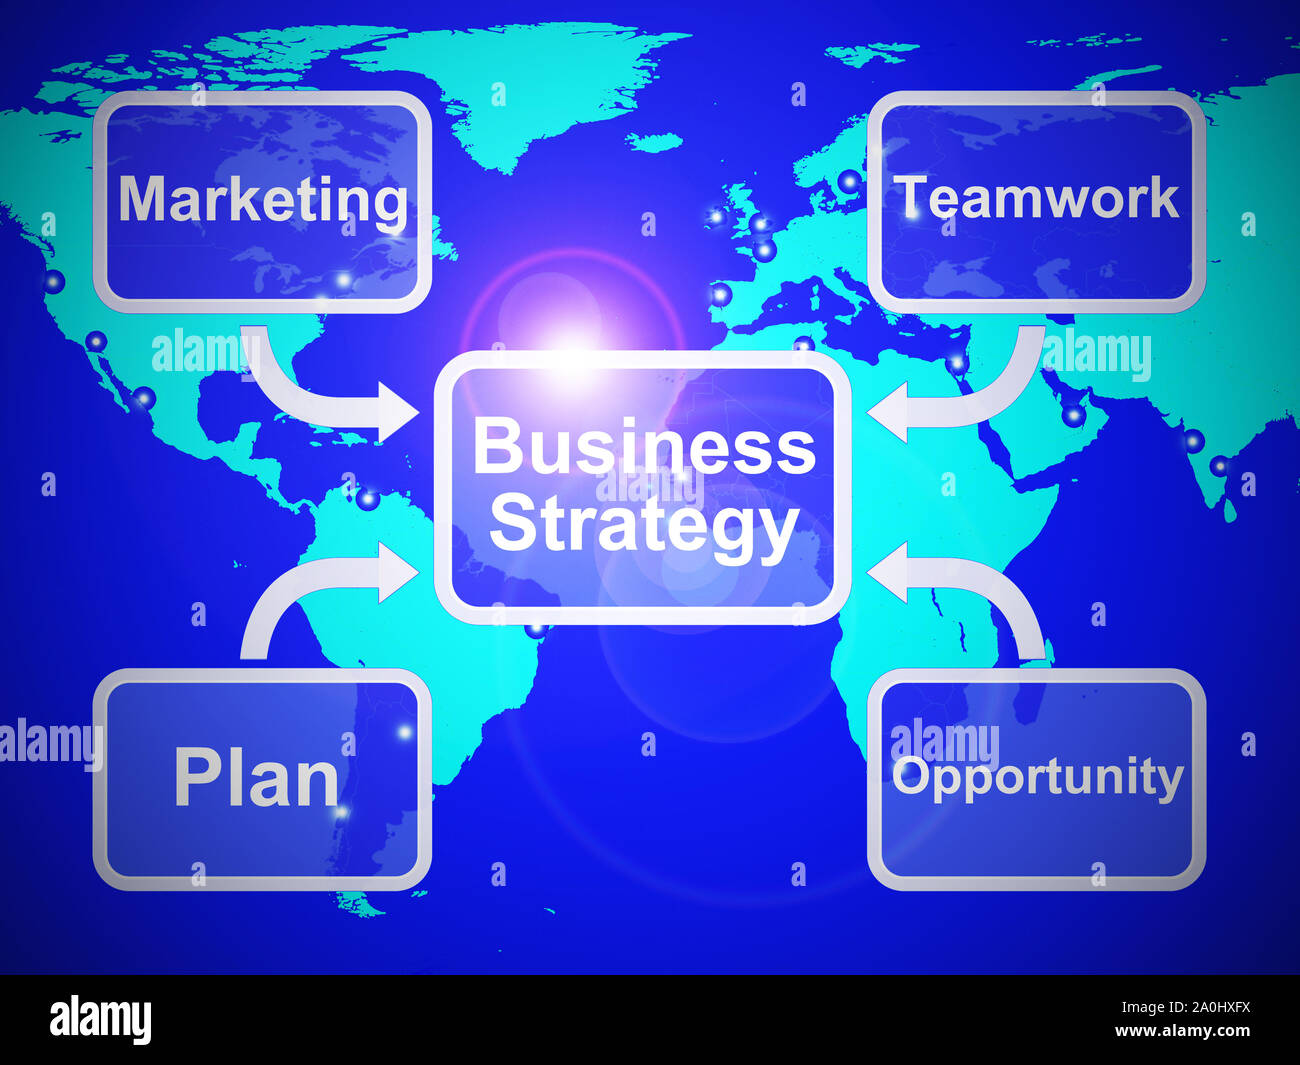 Stratégie d'entreprise ou stratagème est important pour la croissance de l'entreprise. Une stratégie avec prévoyance pour la prospérité et la réussite - 3d illustration Banque D'Images